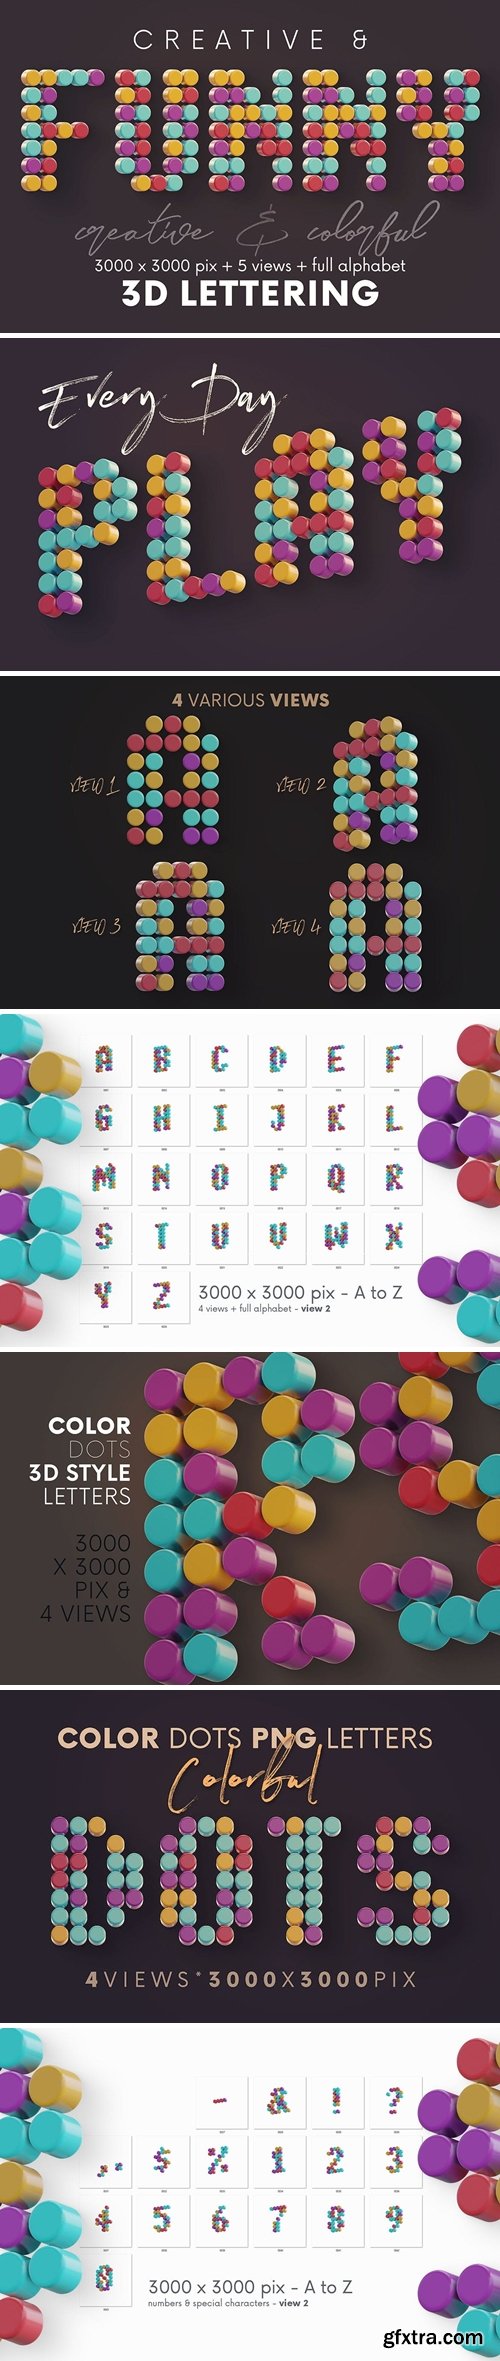 Color Dots - 3D Lettering 3M9TR9Q